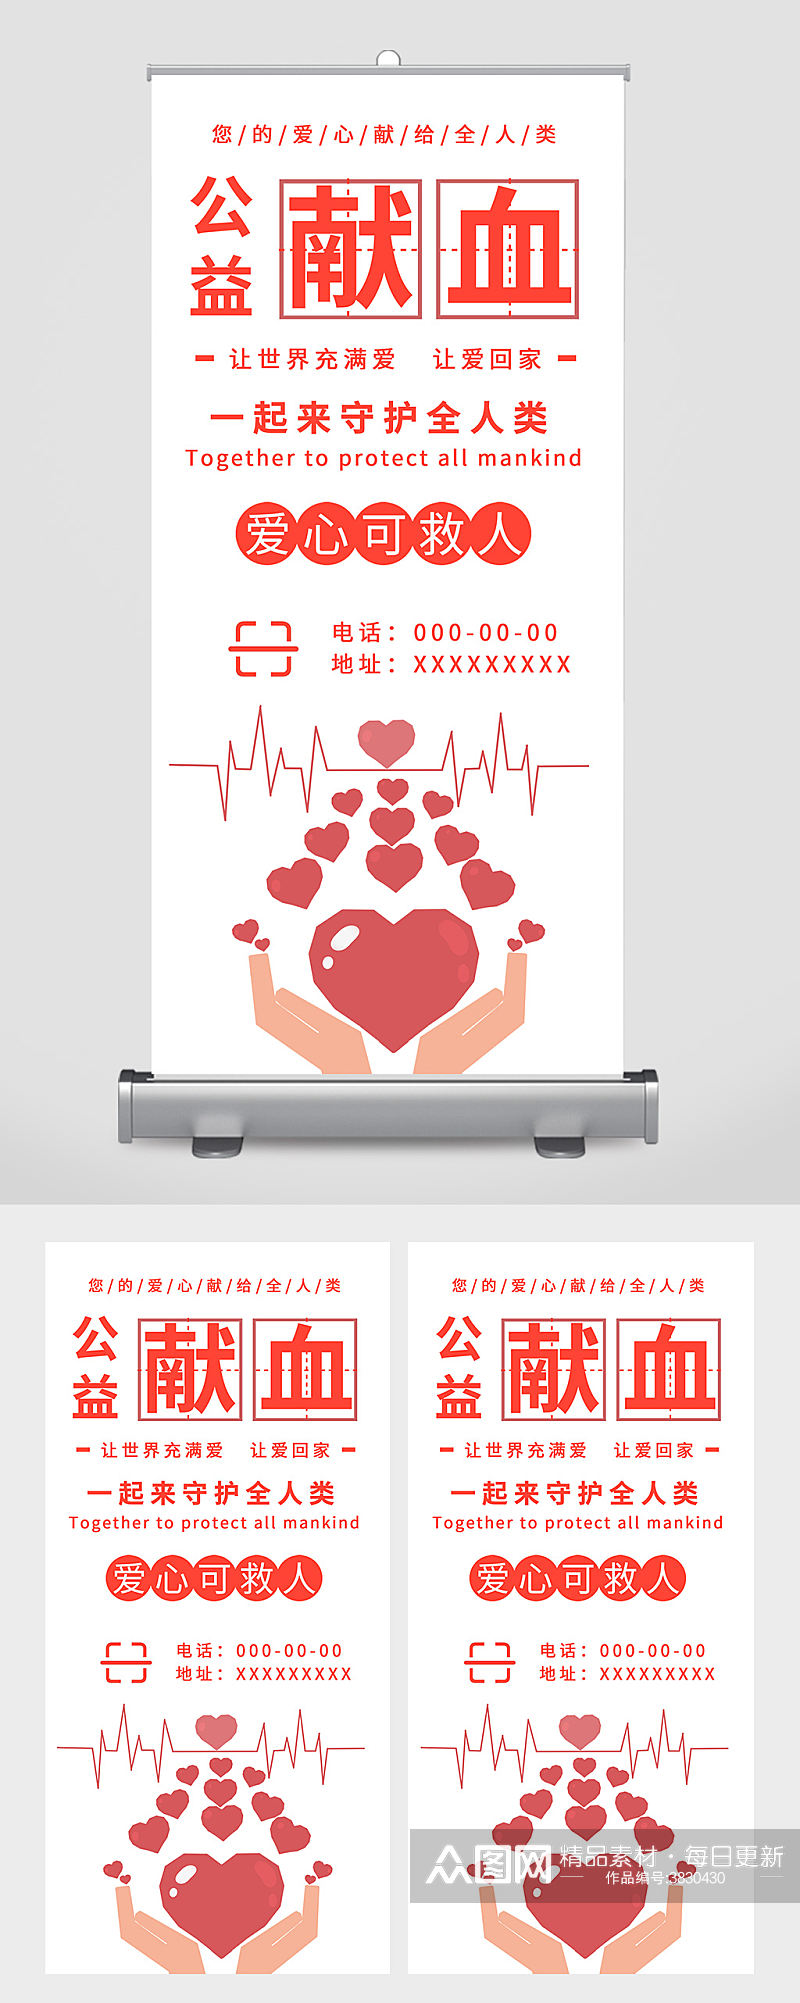 简约公益献血宣传易拉宝设计素材